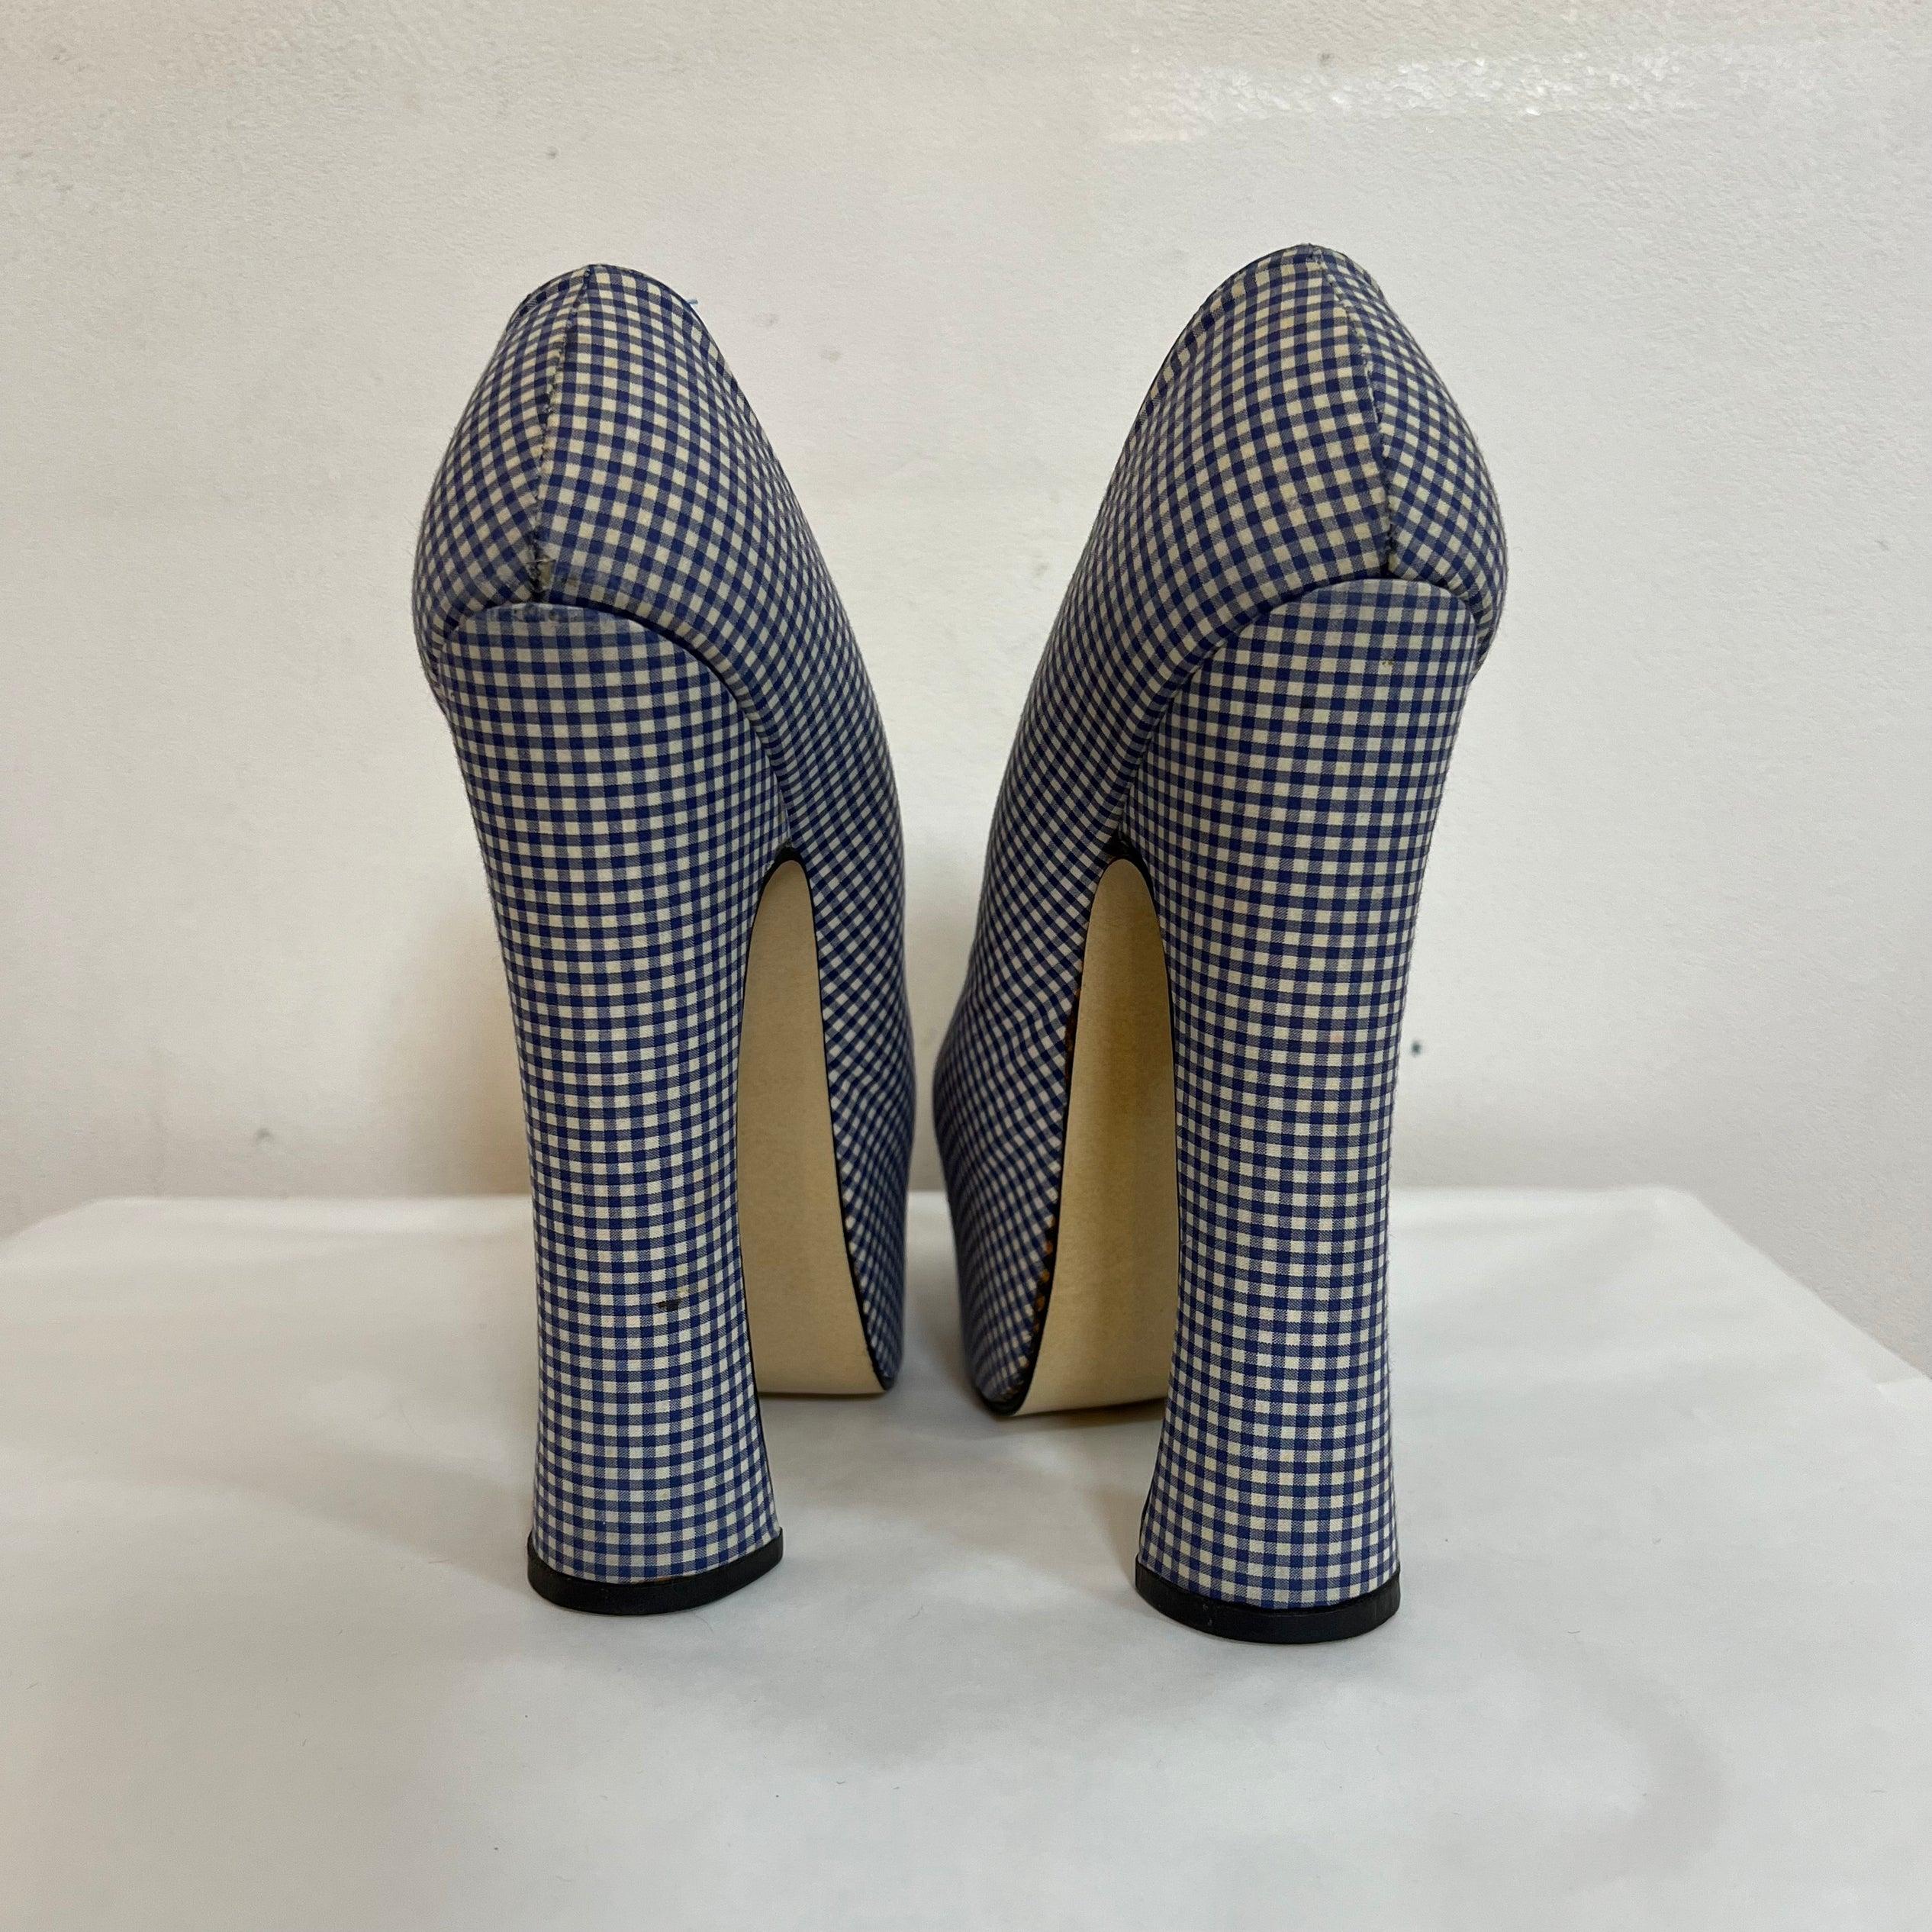 Platform heels 1993 Vivienne Westwood gingham For Sale 5